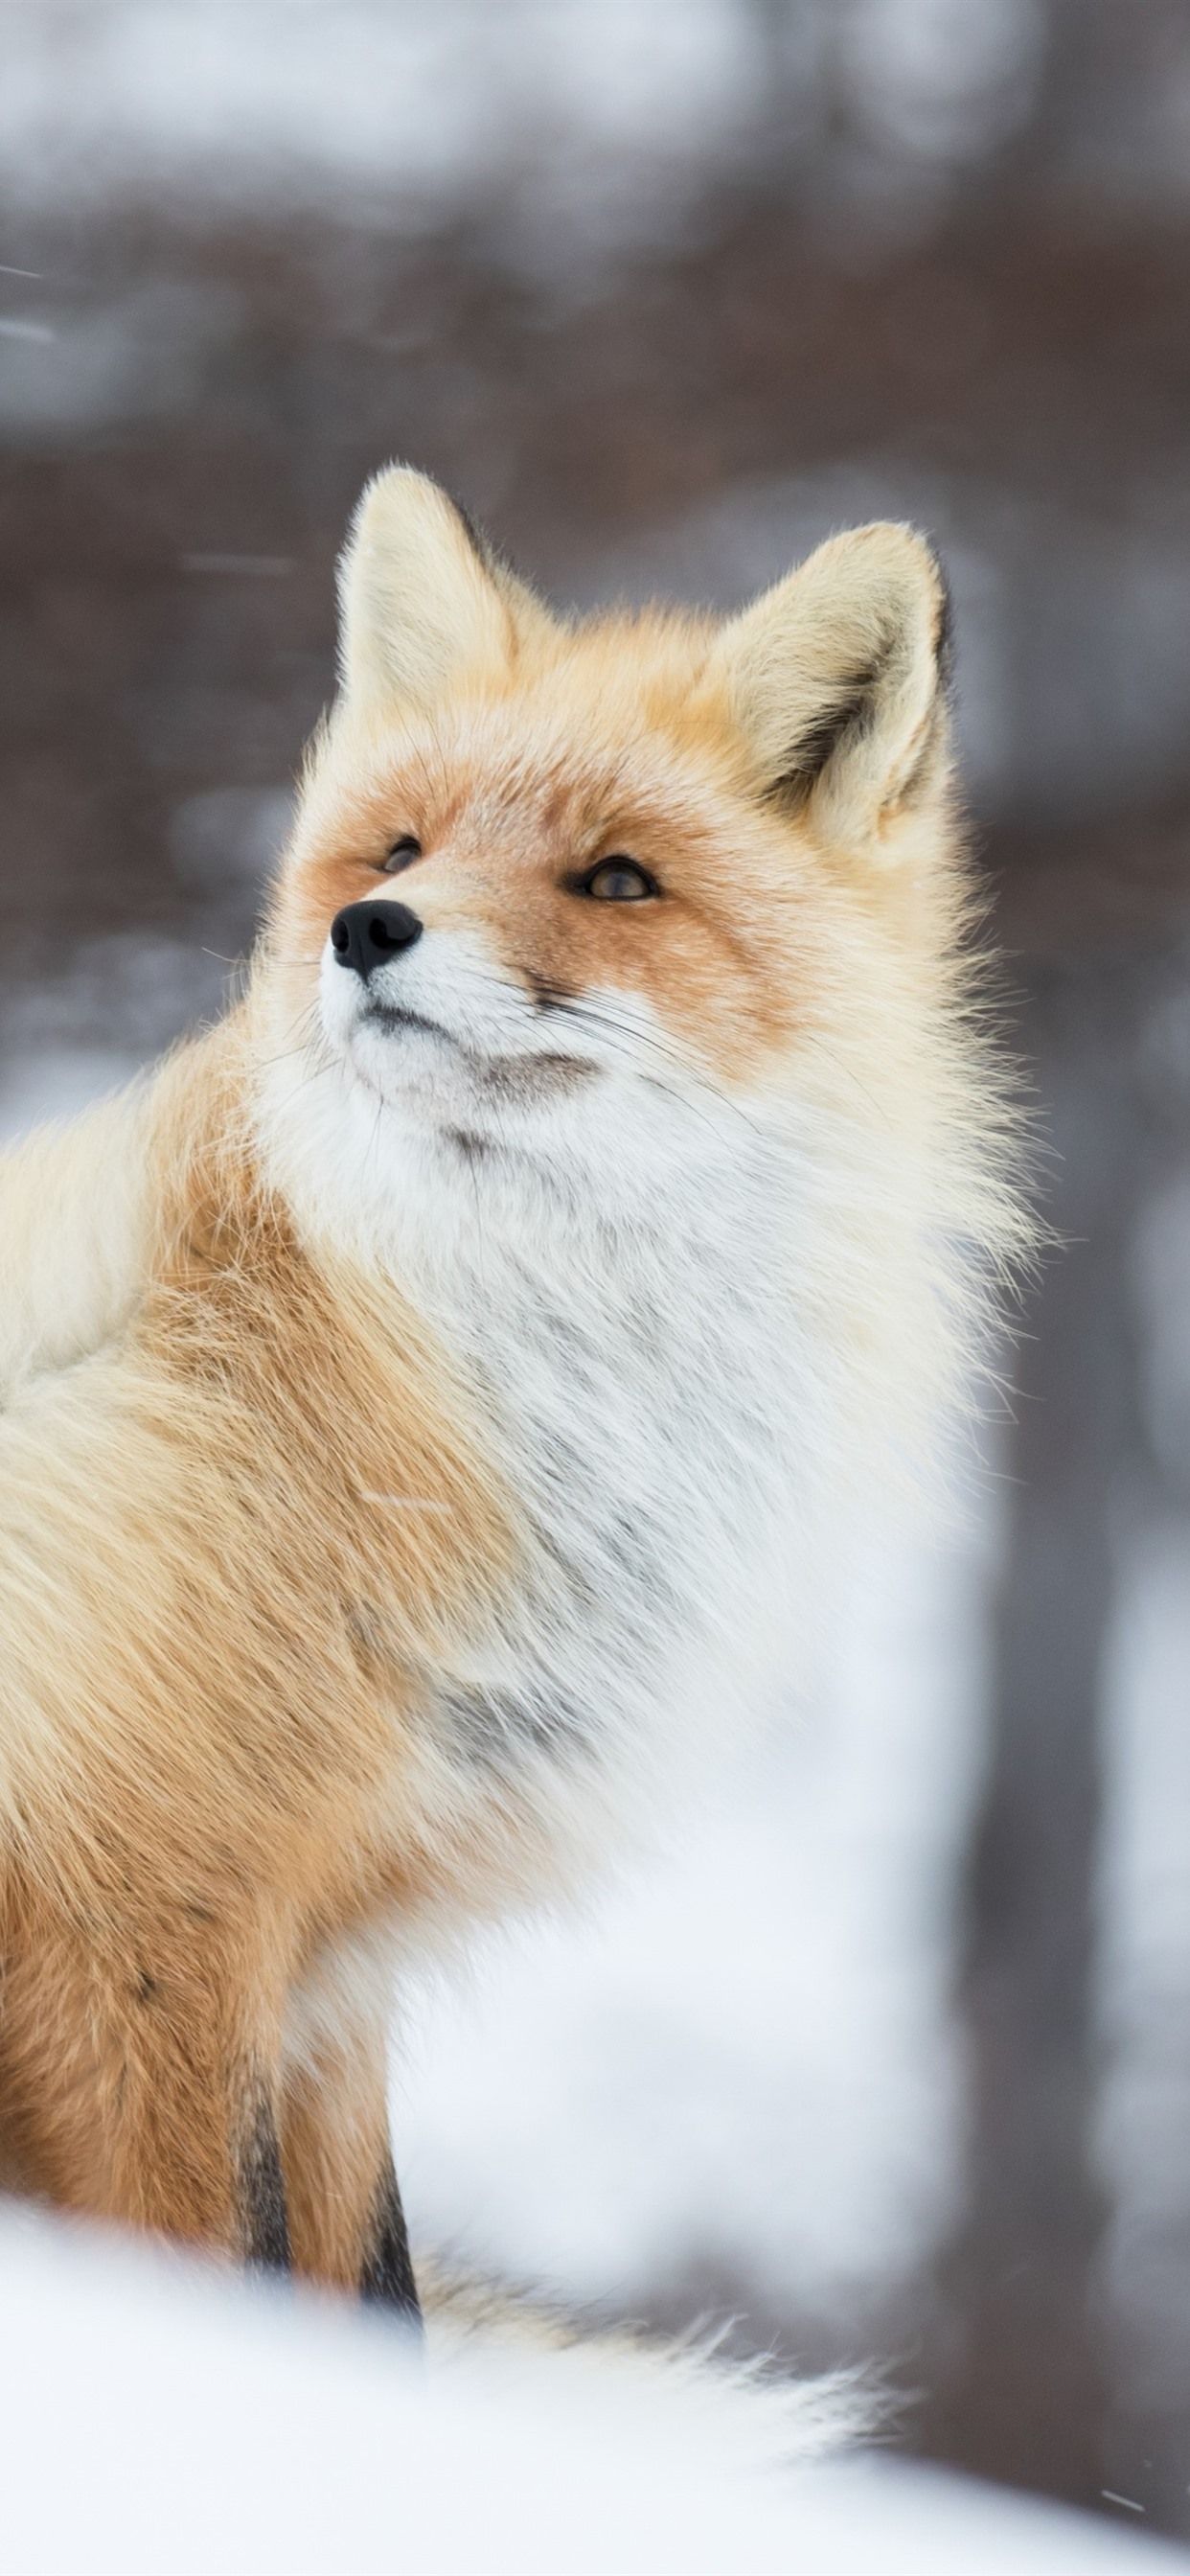  Winter Tiere Hintergrundbild 1242x2688. Tier Im Winter, Fuchs, Schnee 1242x2688 IPhone 11 Pro XS Max Hintergrundbilder, HD, Bild